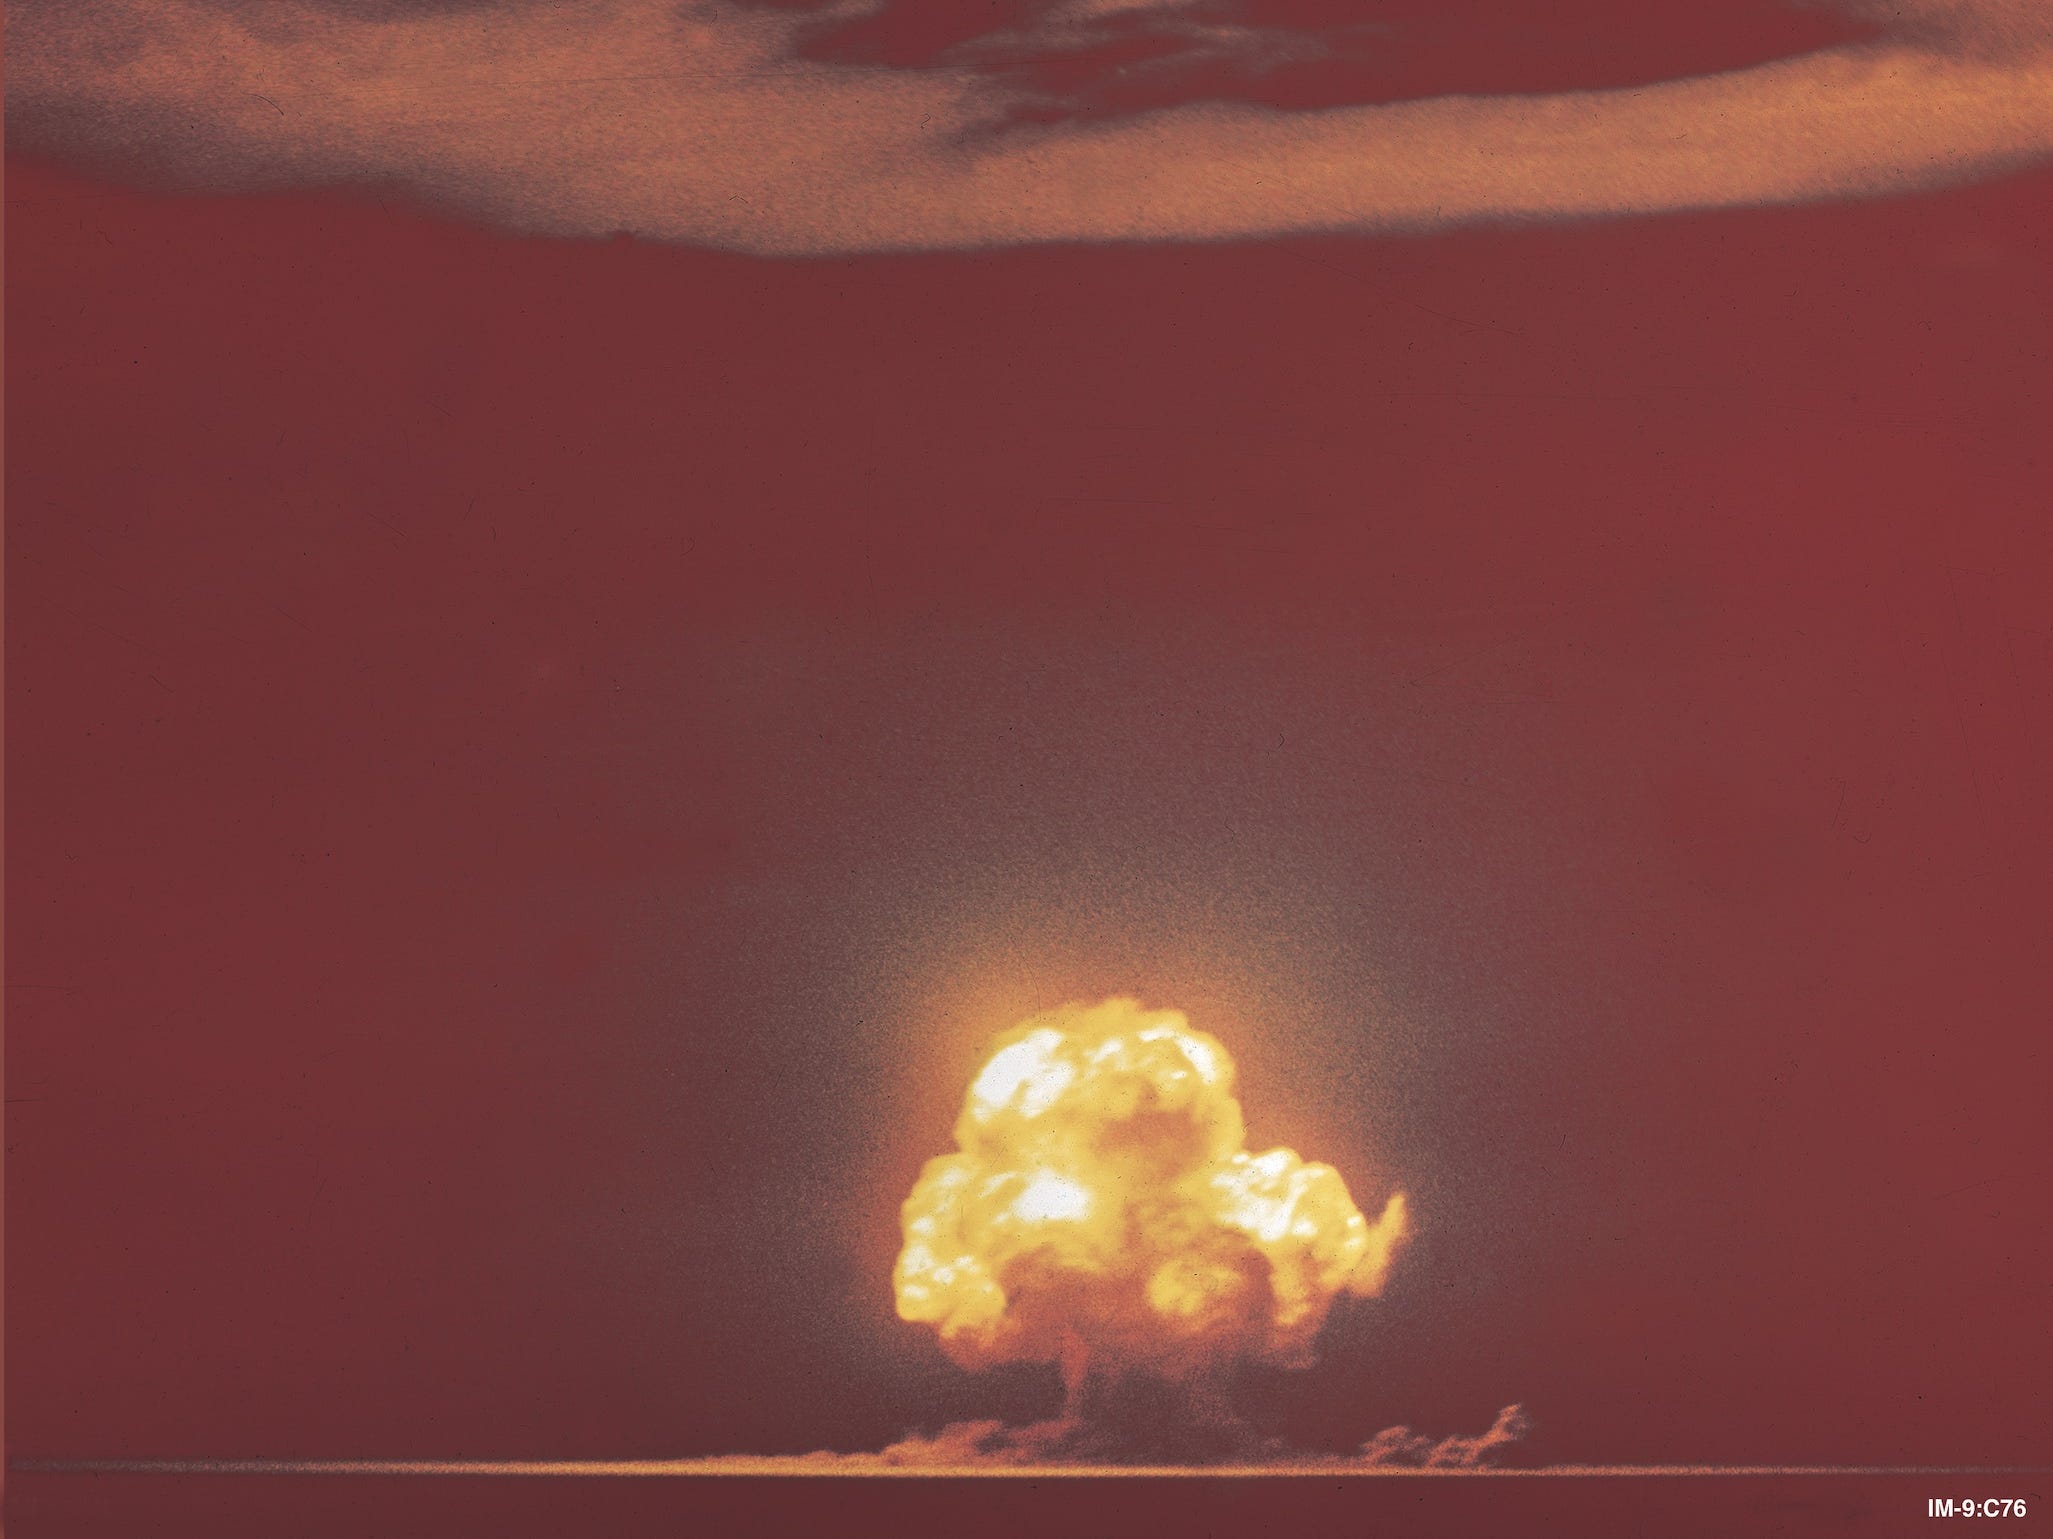 Trinity-Atombombentest in der Ferne, gelber Atompilz, der in den orangefarbenen Himmel ausbricht